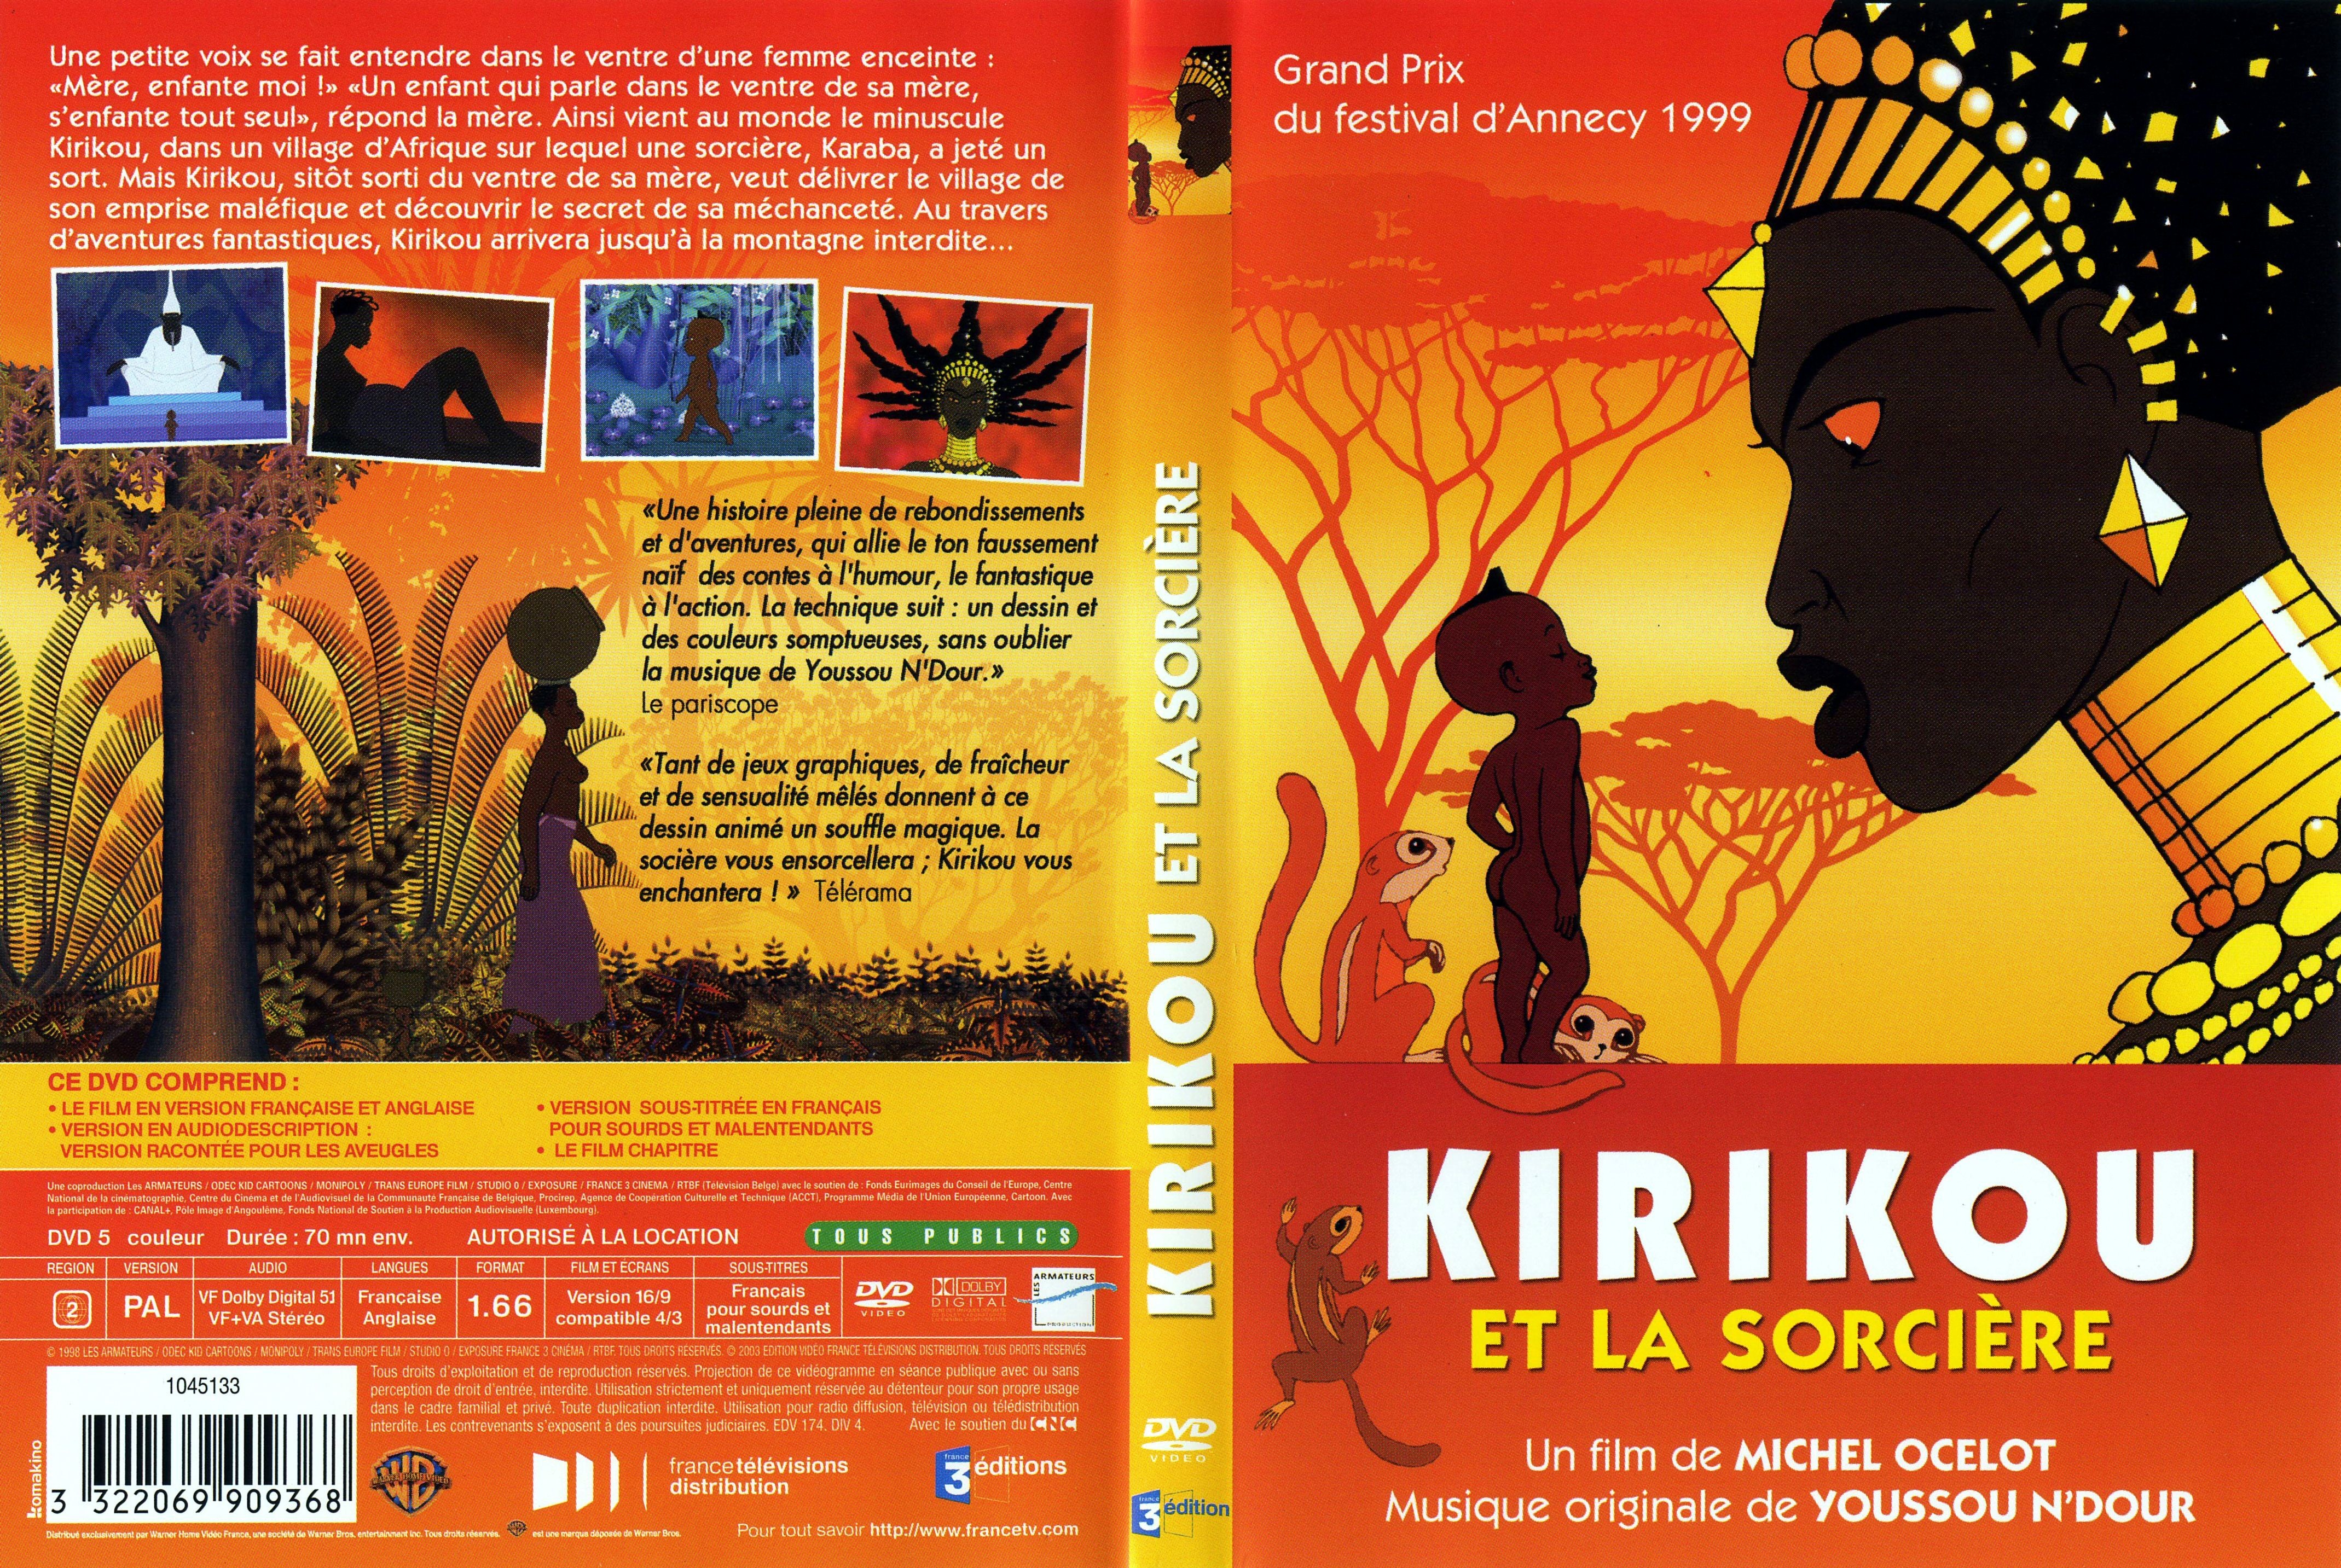 Jaquette DVD Kirikou et la sorciere v2